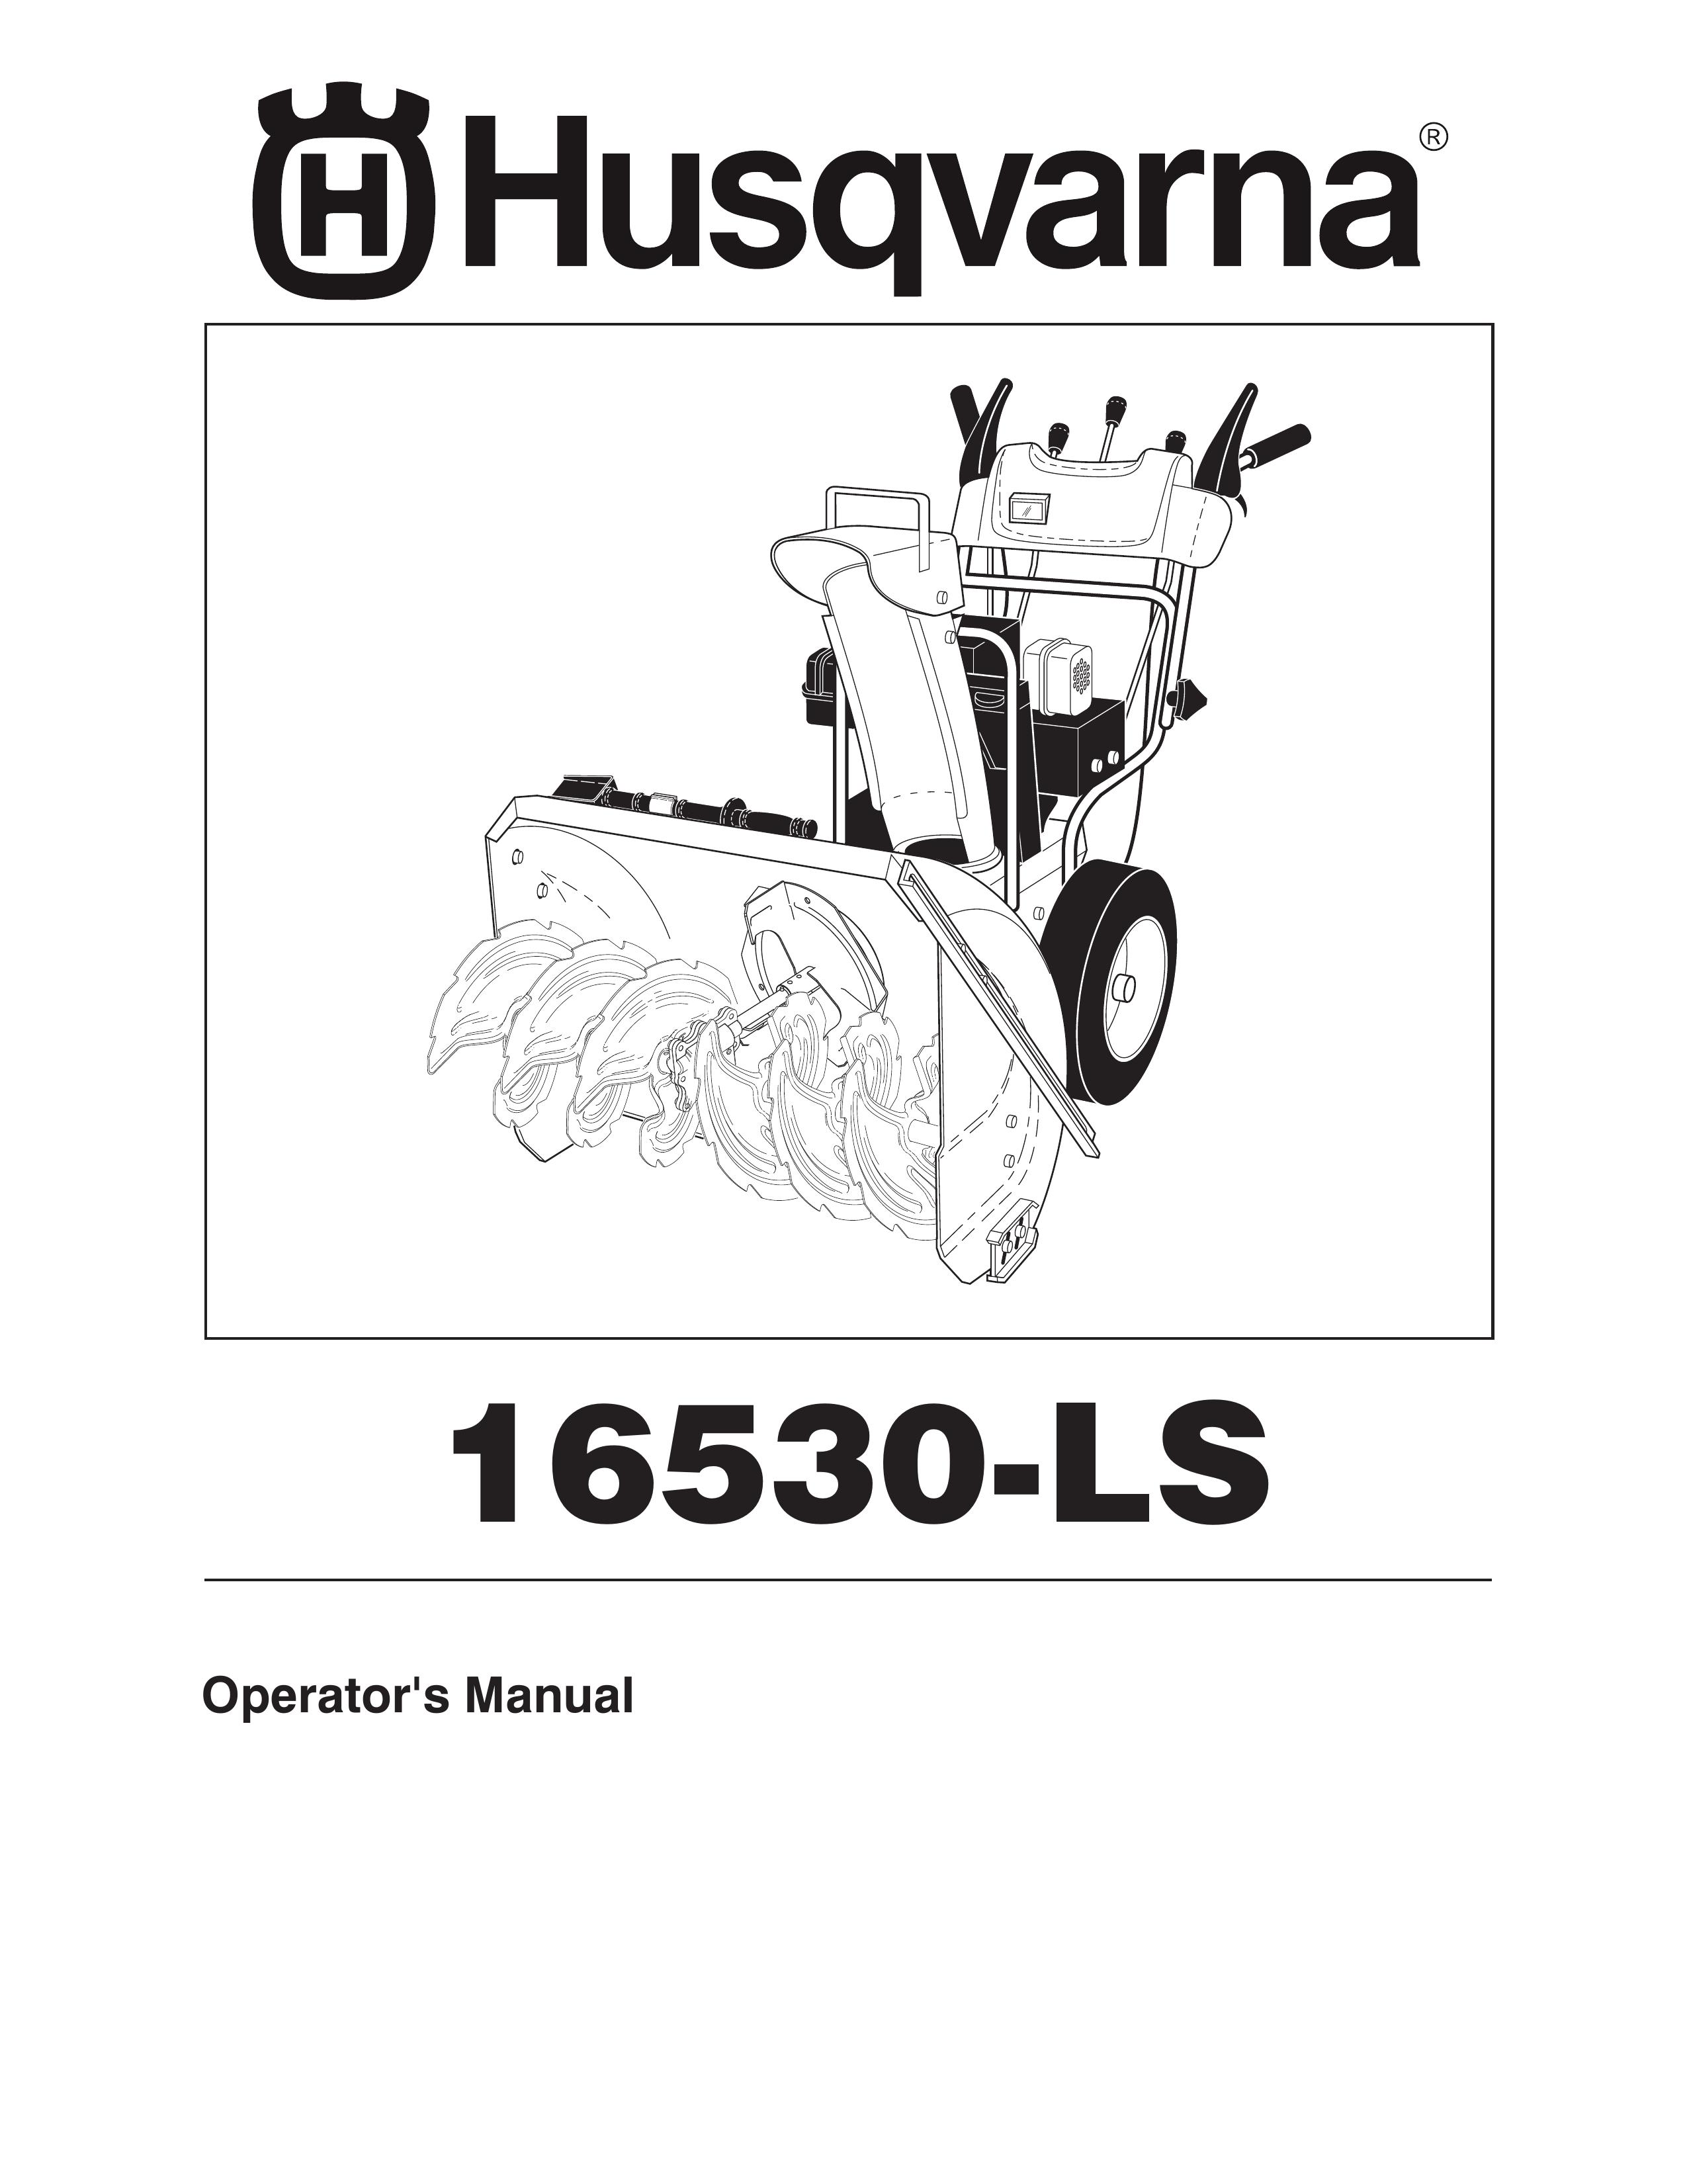 Husqvarna 16530-LS Snow Blower User Manual